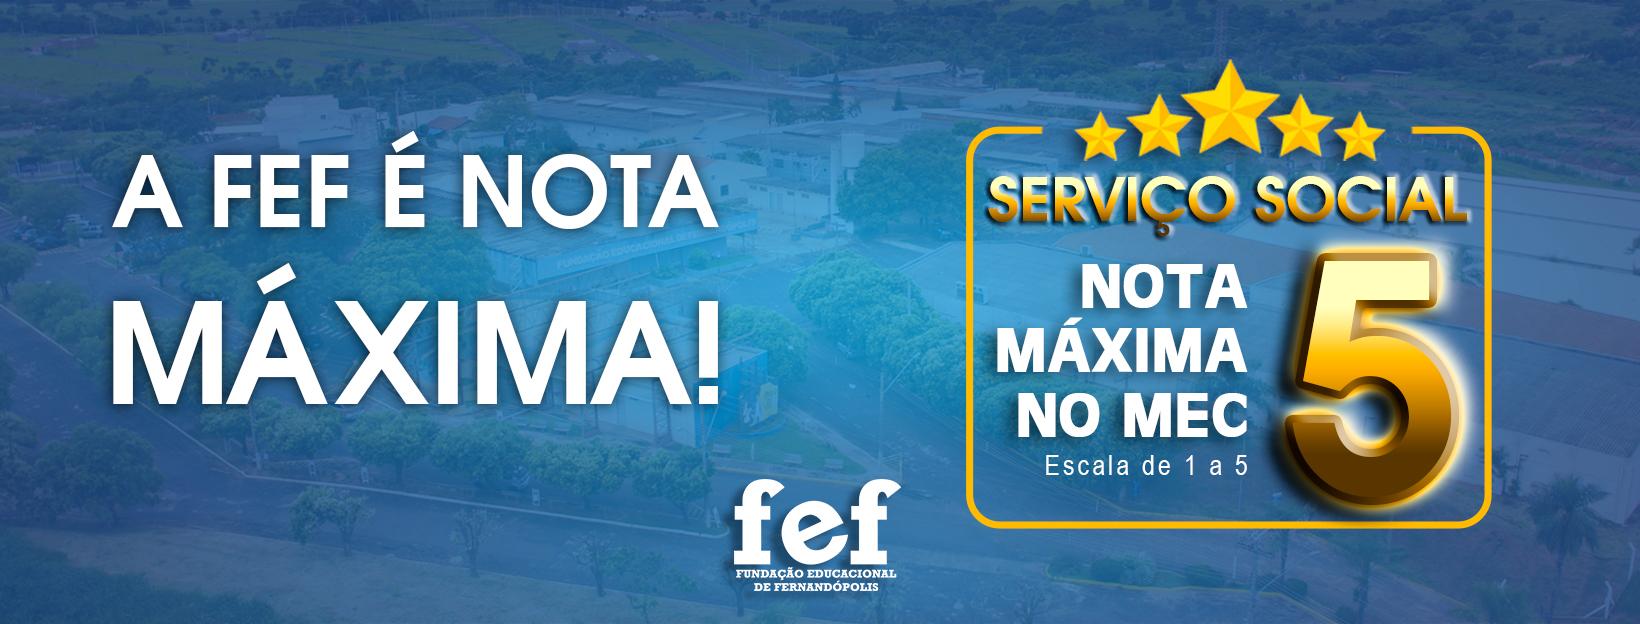 Banner Faculdades Integradas de Fernandópolis - Serviço Social da FEF é nota 5 no MEC!